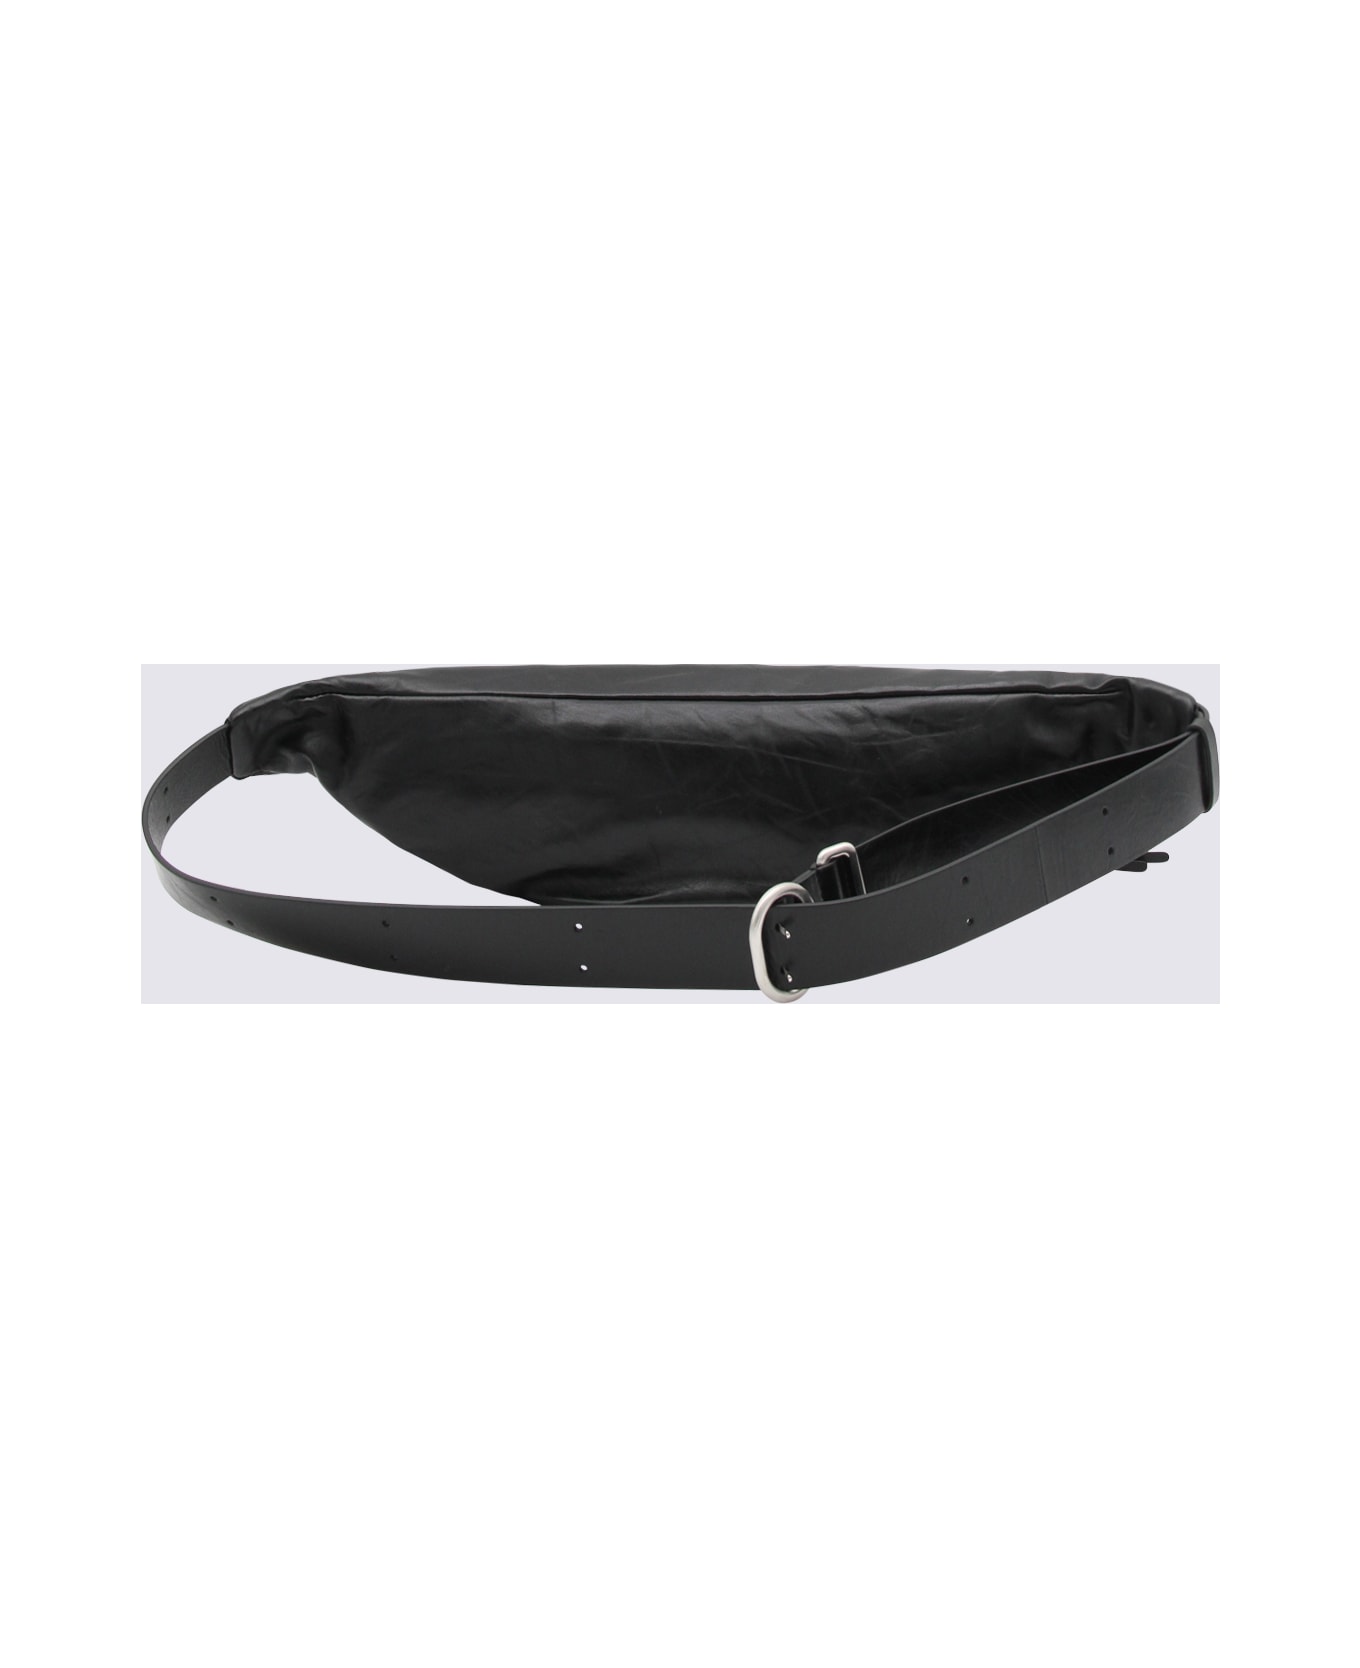 Jil Sander Black Leather Belt Bag - Black ベルトバッグ